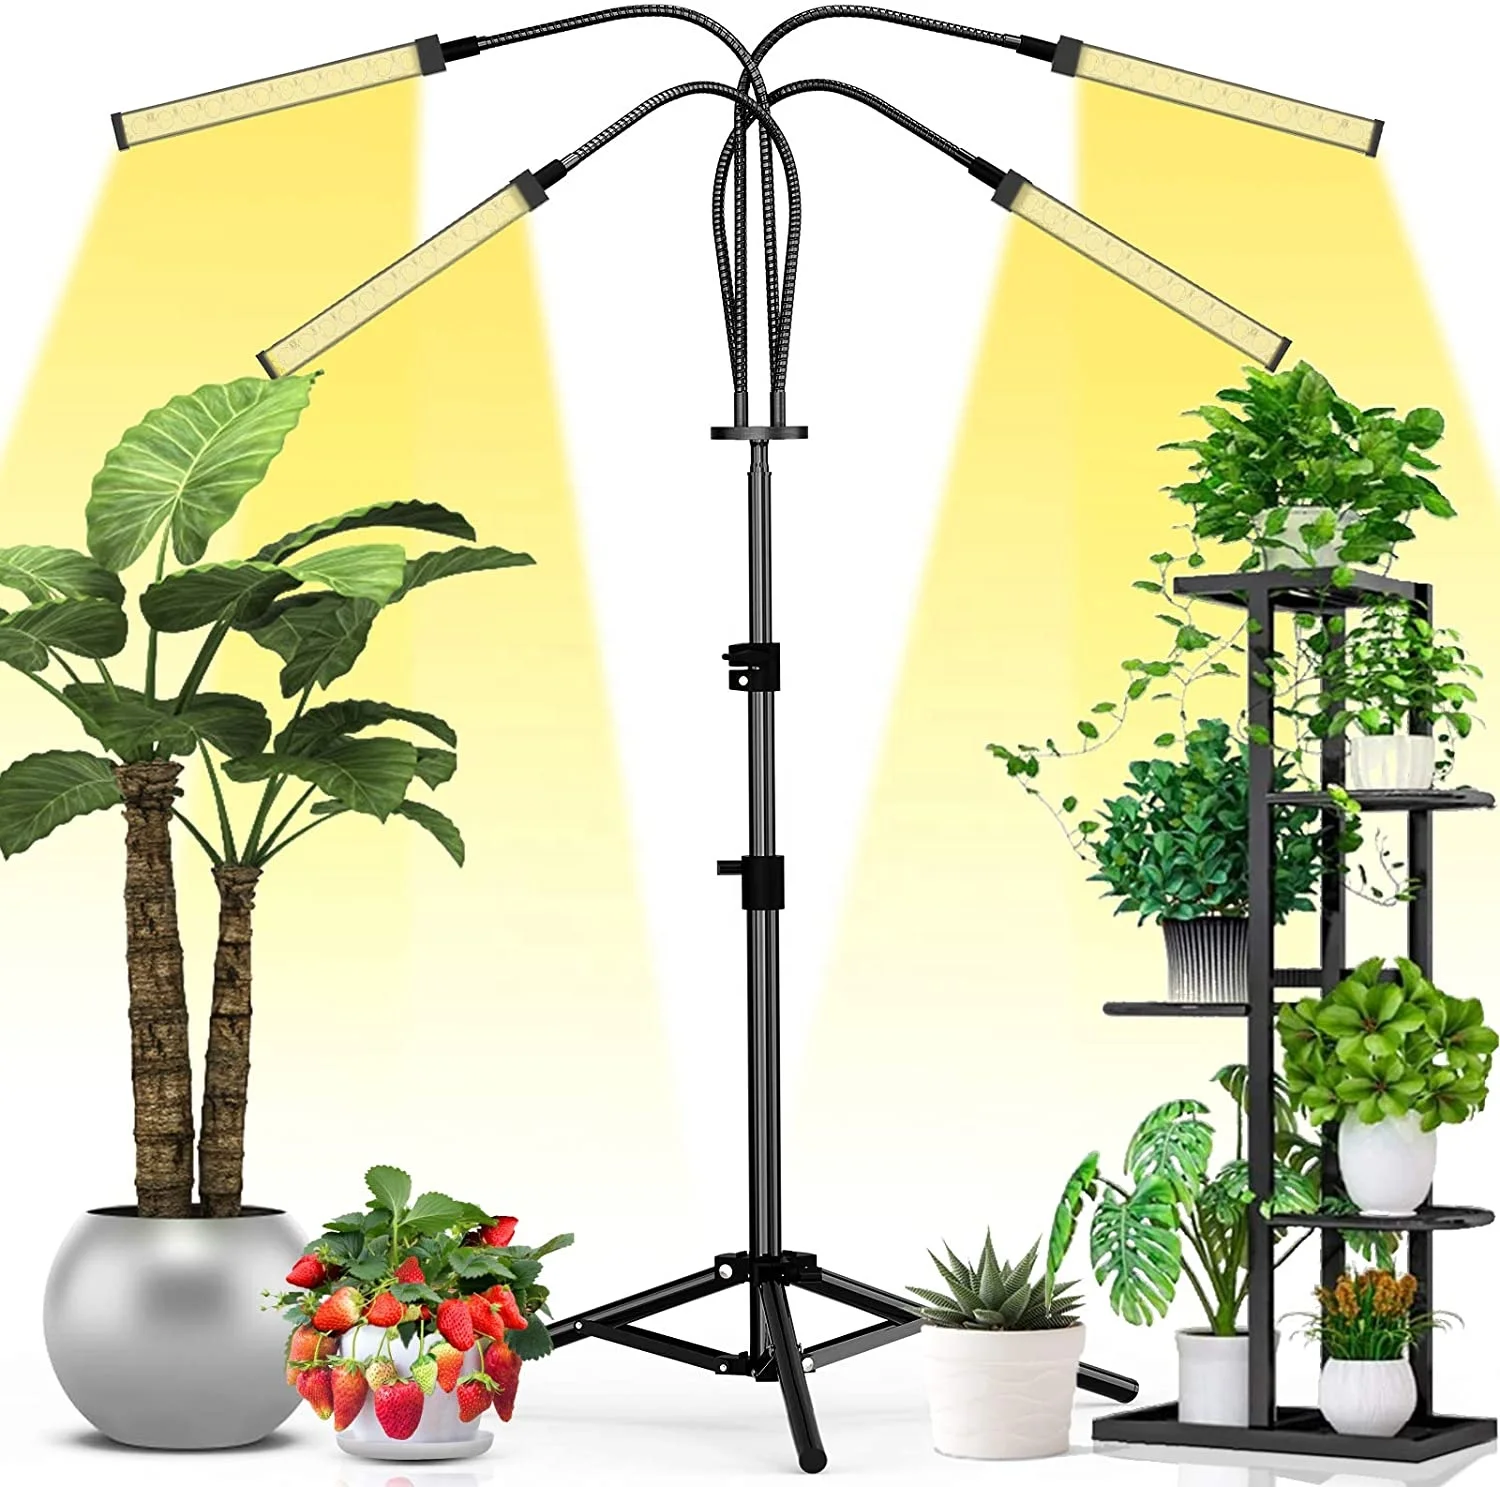 LED Grow Light for Indoor Plants 15W Sunlike Full Spectrum Plant Light,